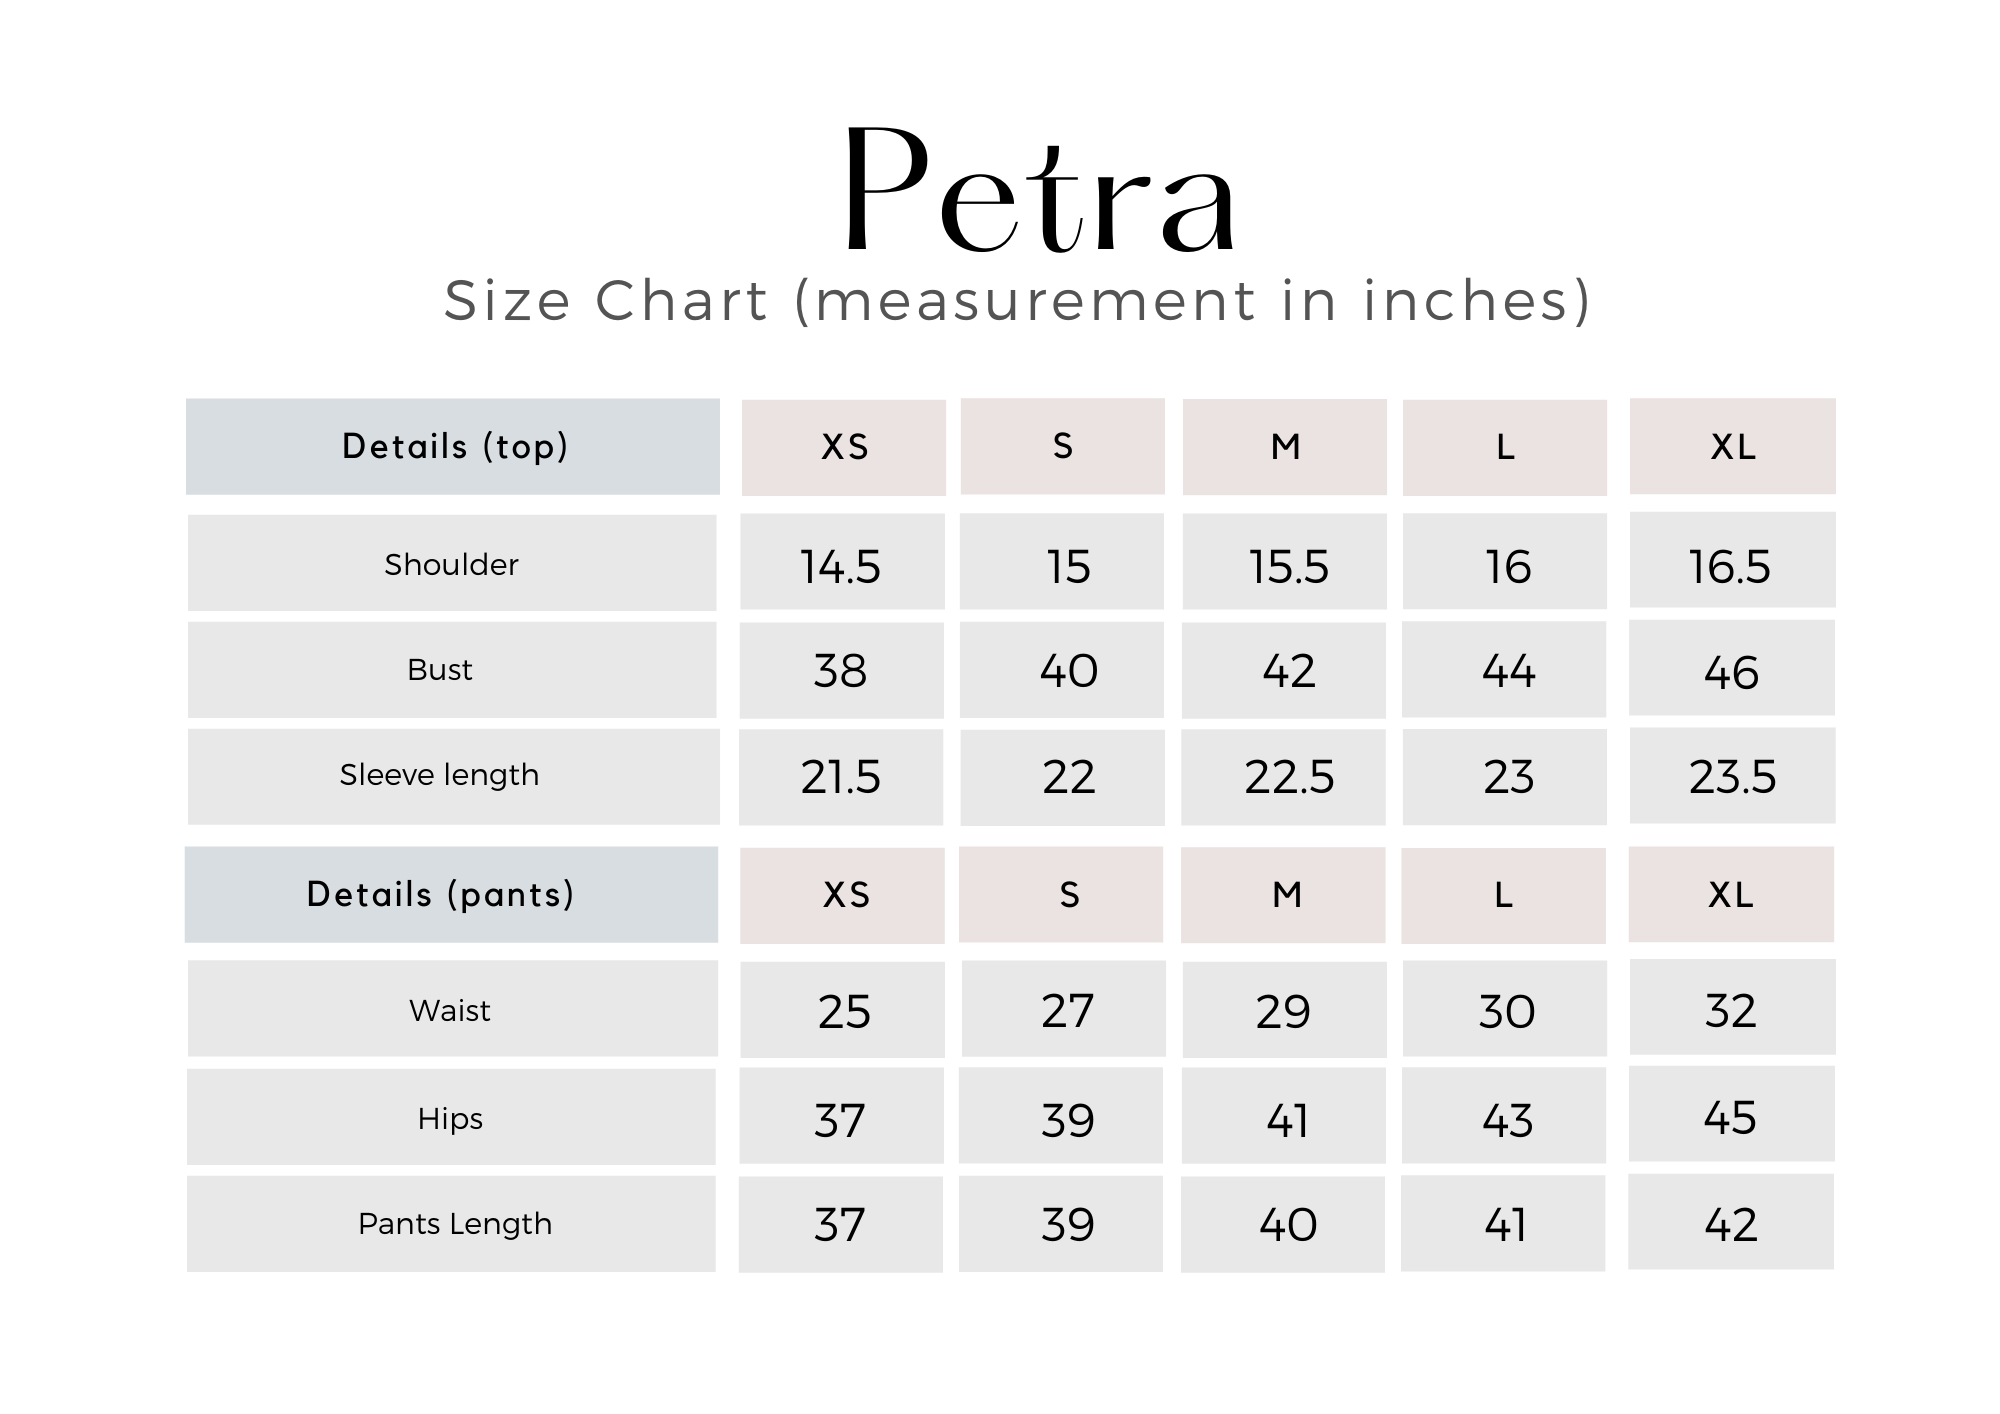 PETRA Size Chart